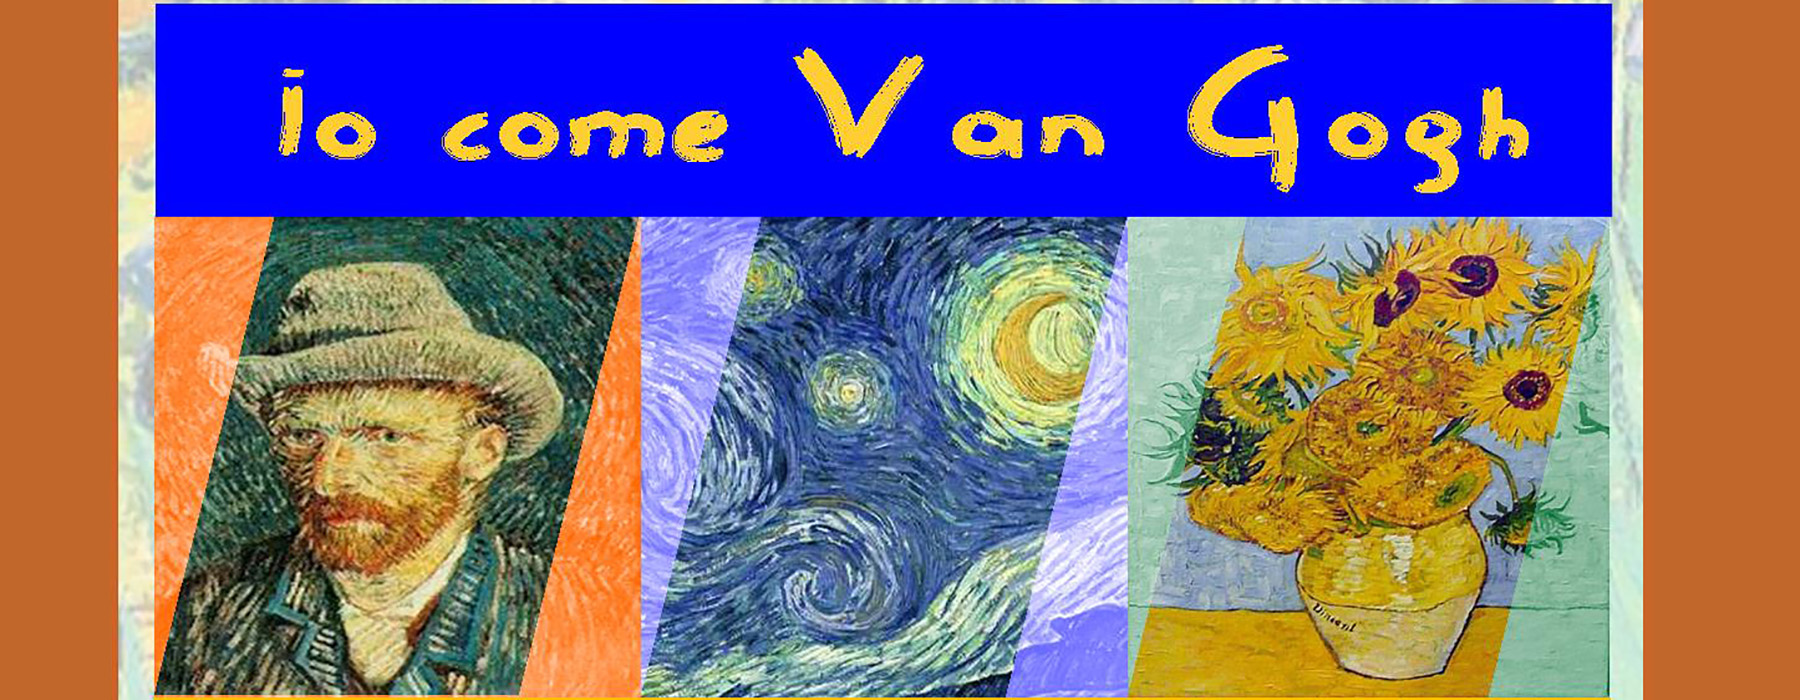 Dettaglio della locandina dell'evento con il titolo 'Io come Van Gogh' e tre miniature di quadri di Van Gogh